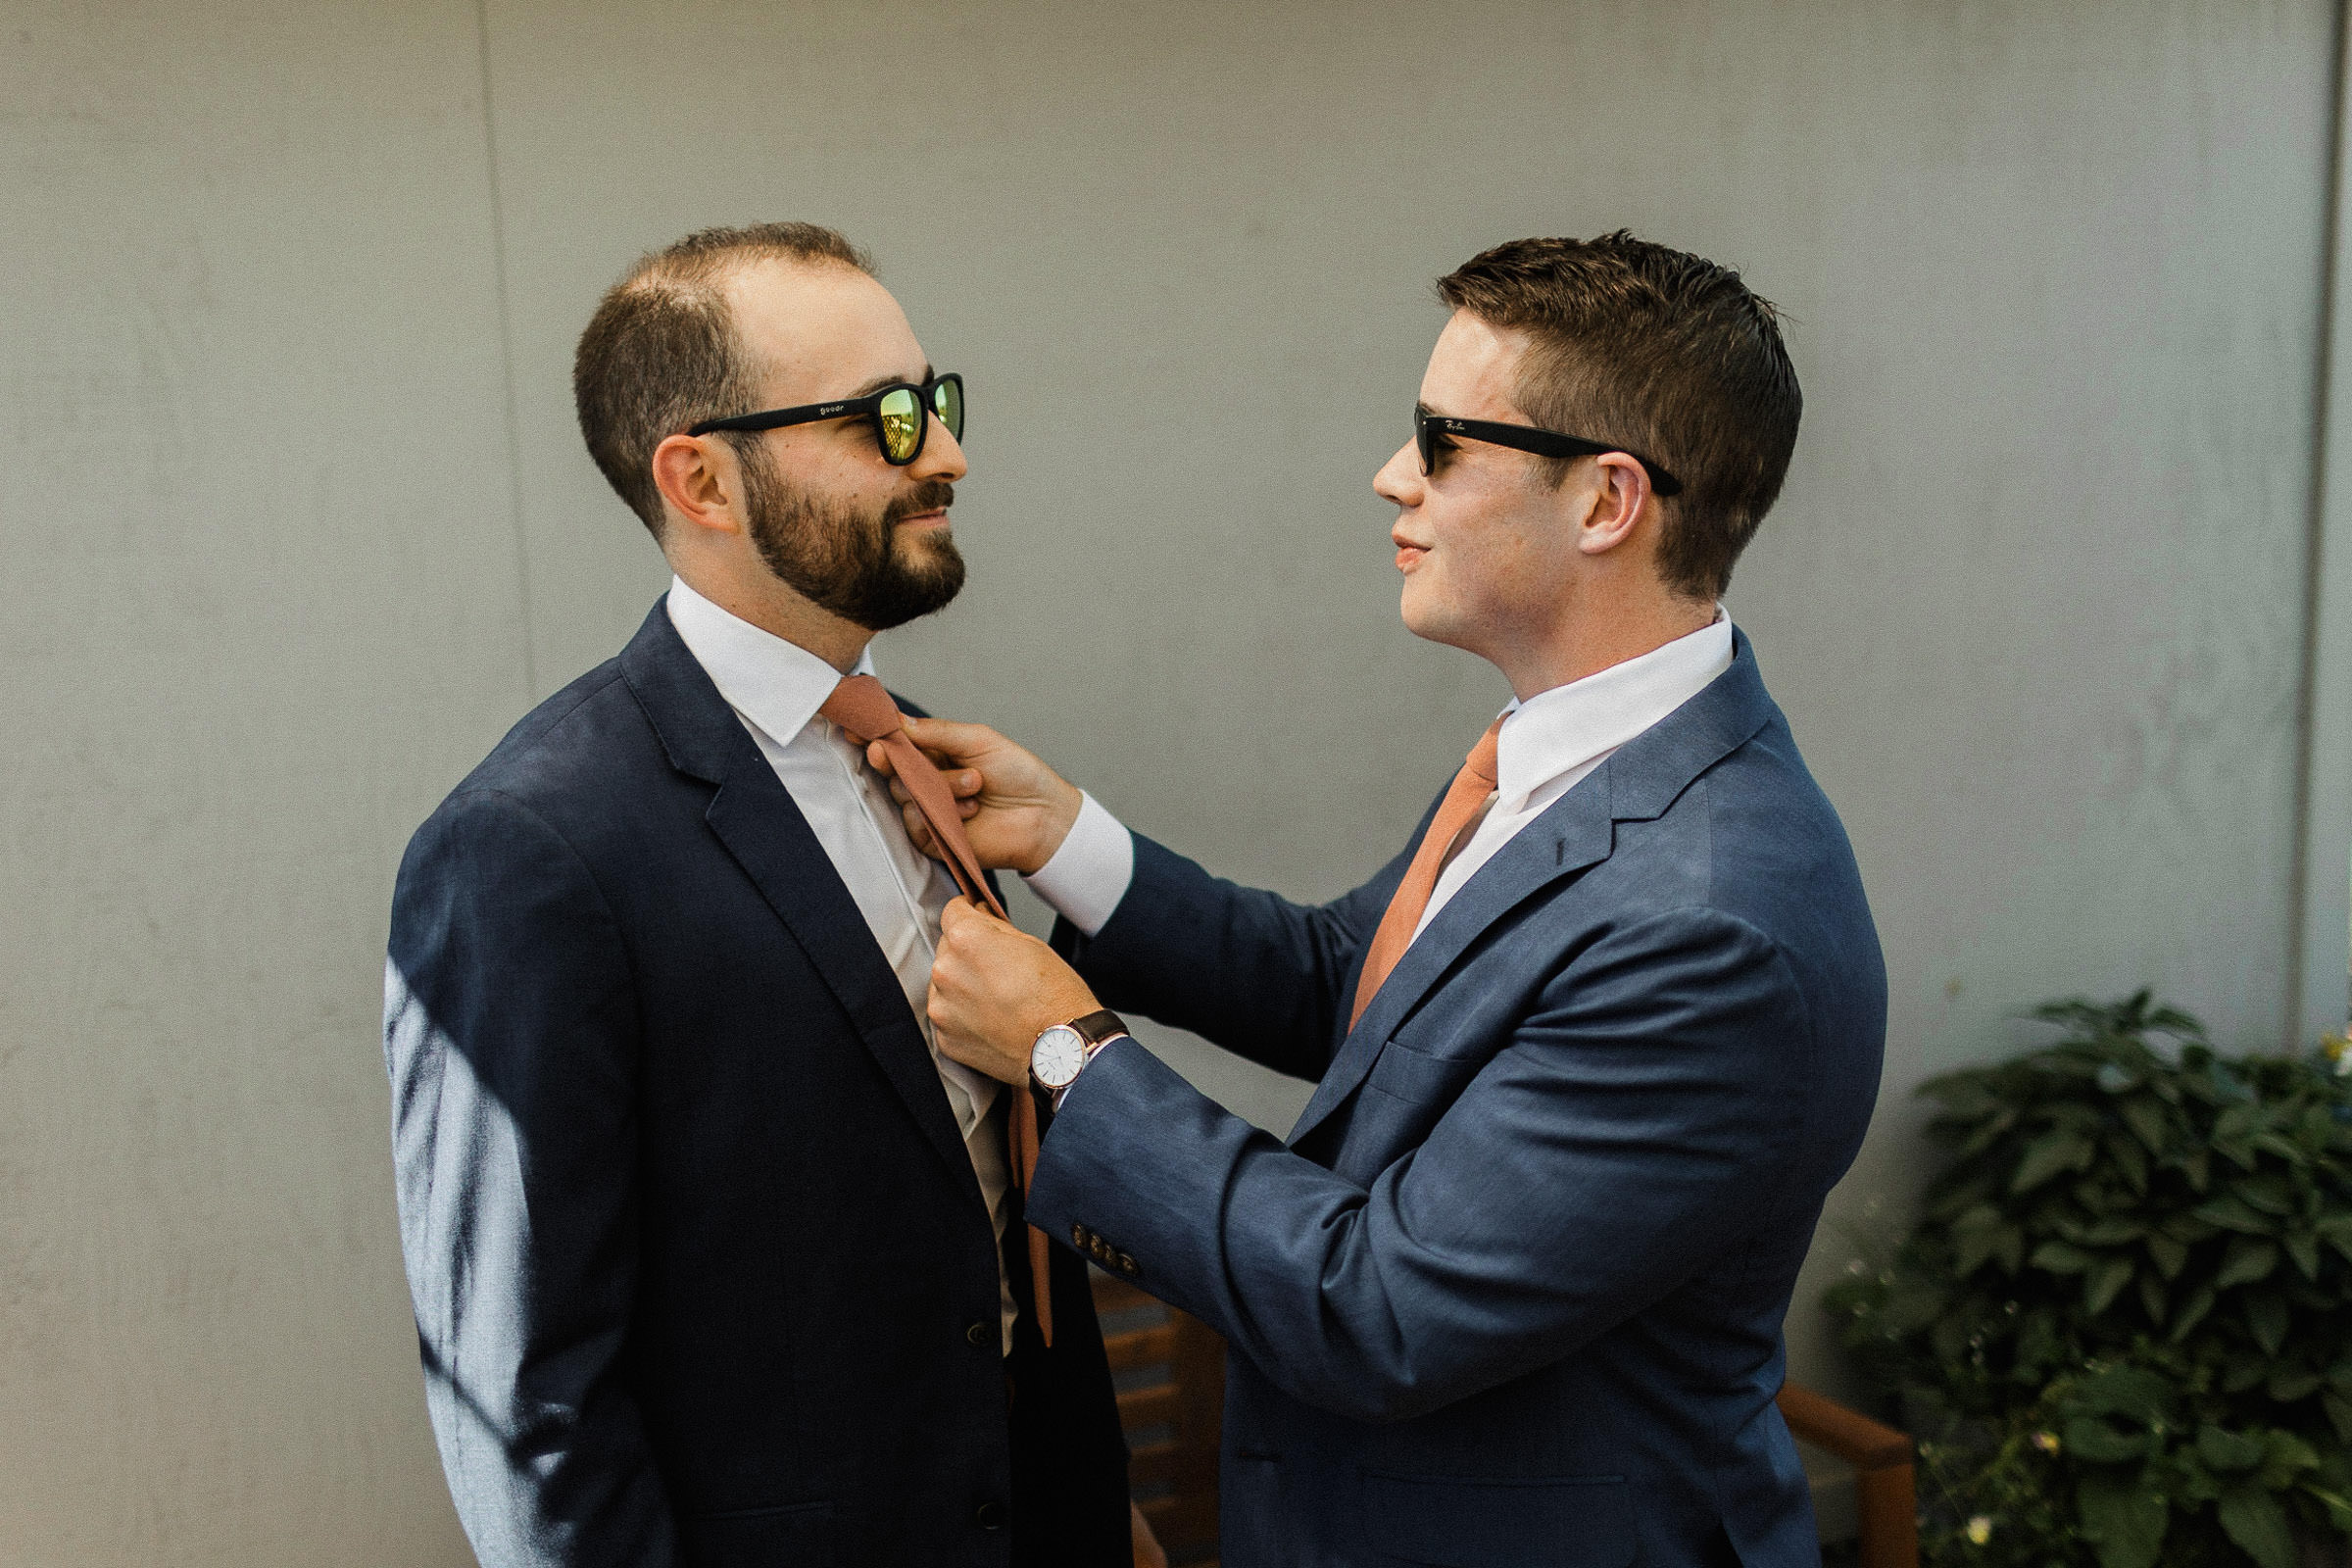 Groom straightens the necktie of one of his groomsmen